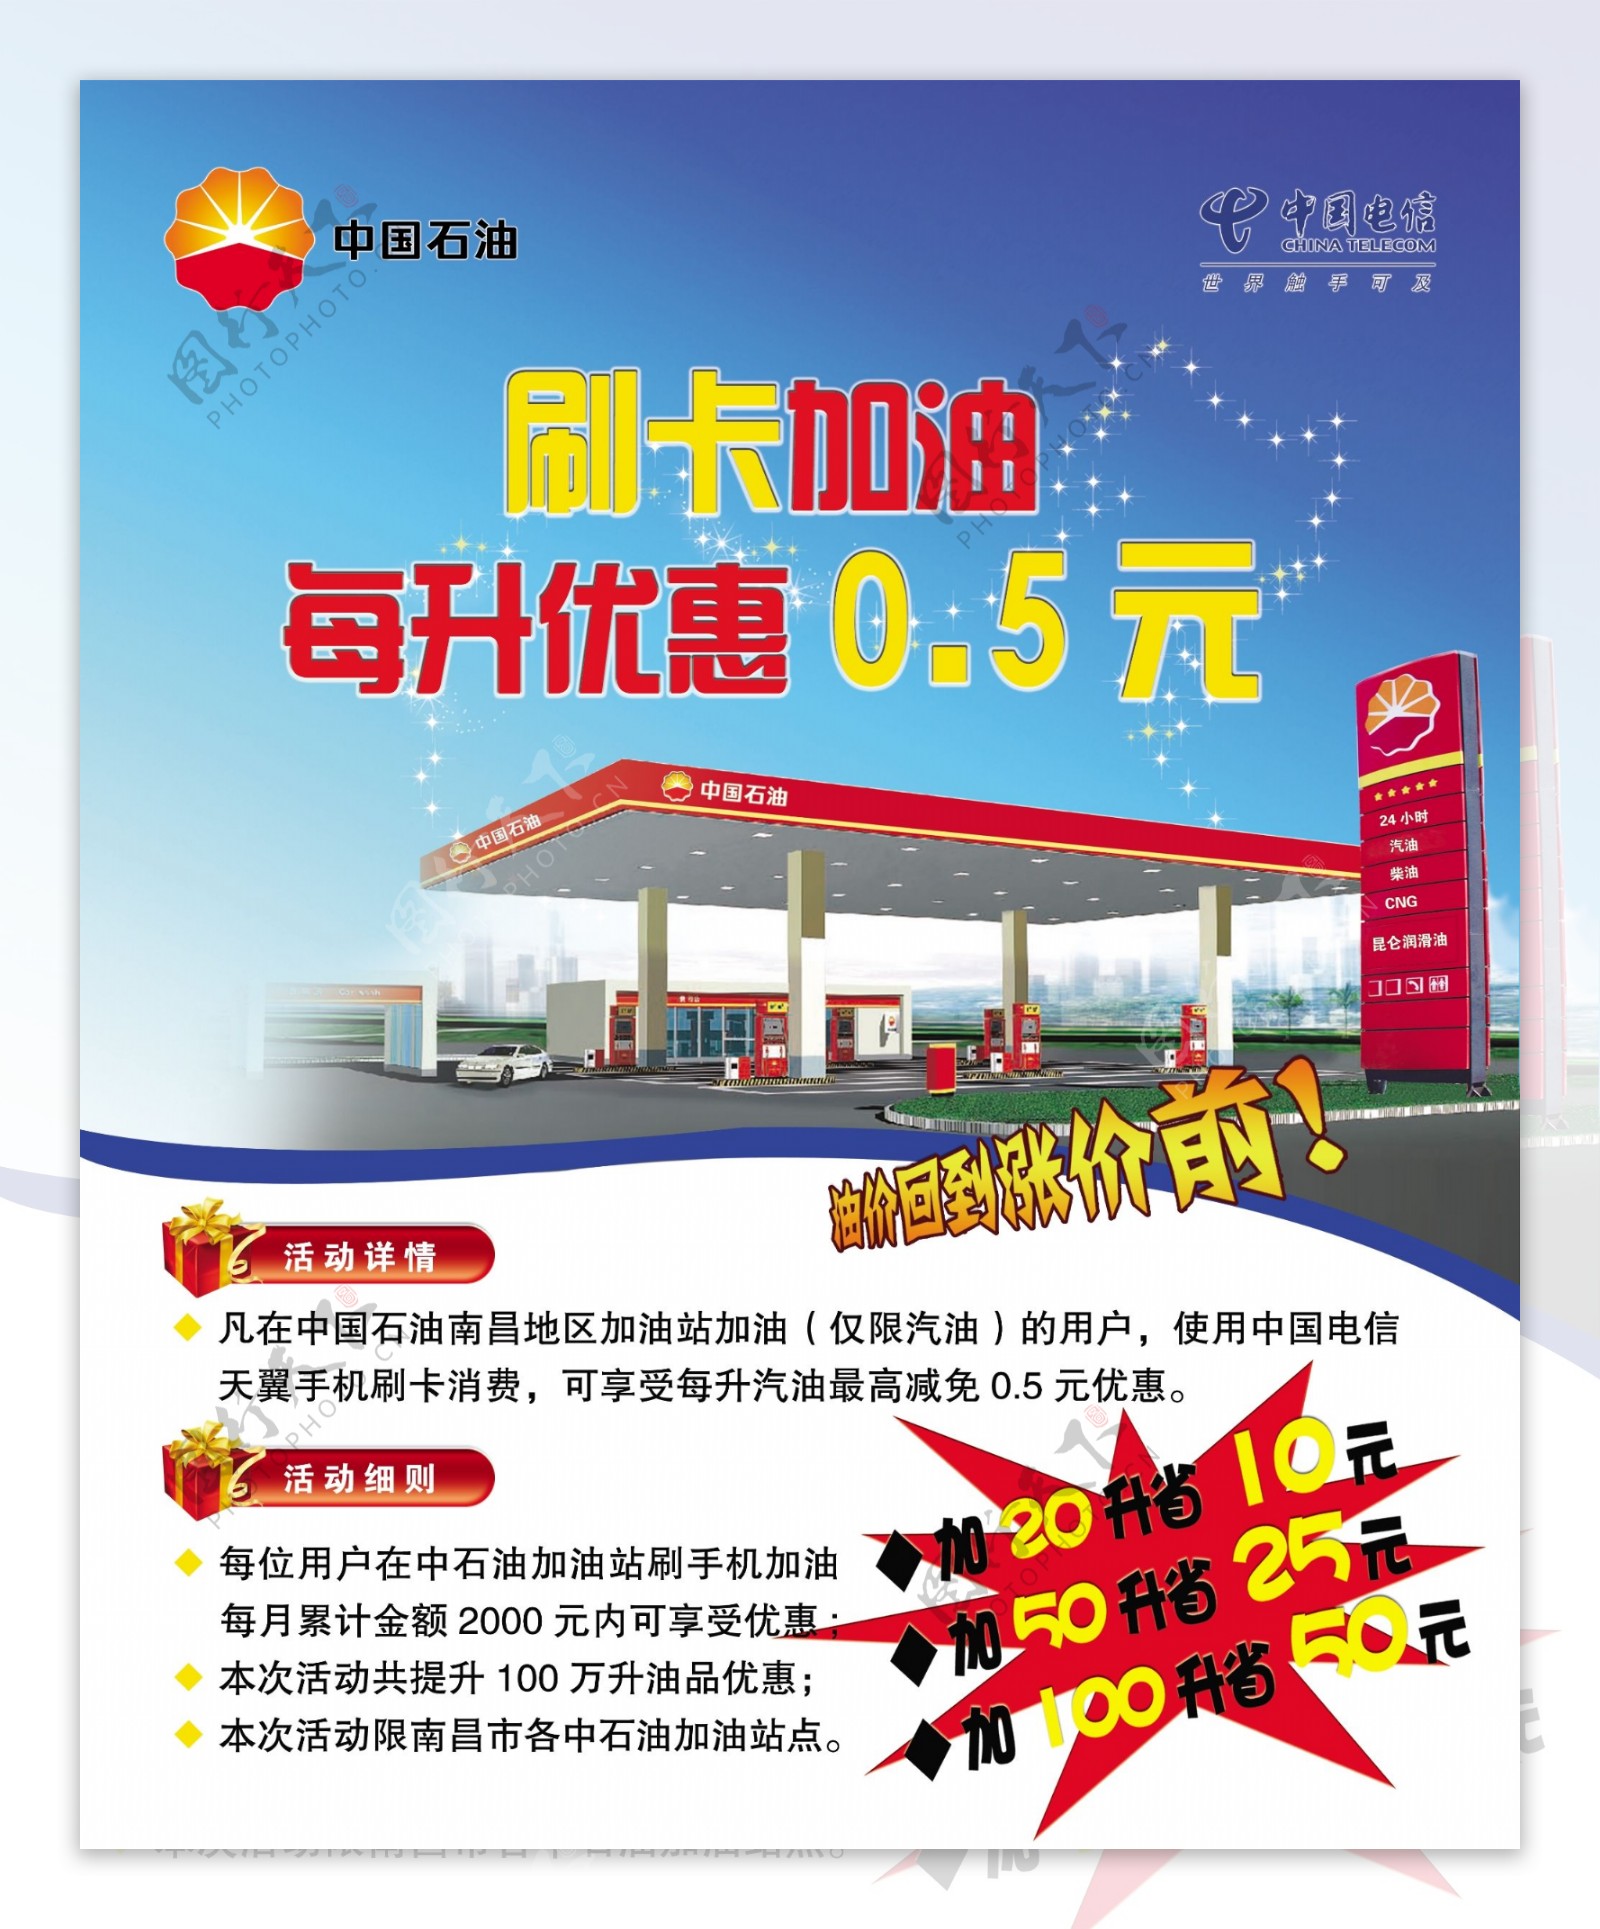 中国石油刷卡加油海报图片